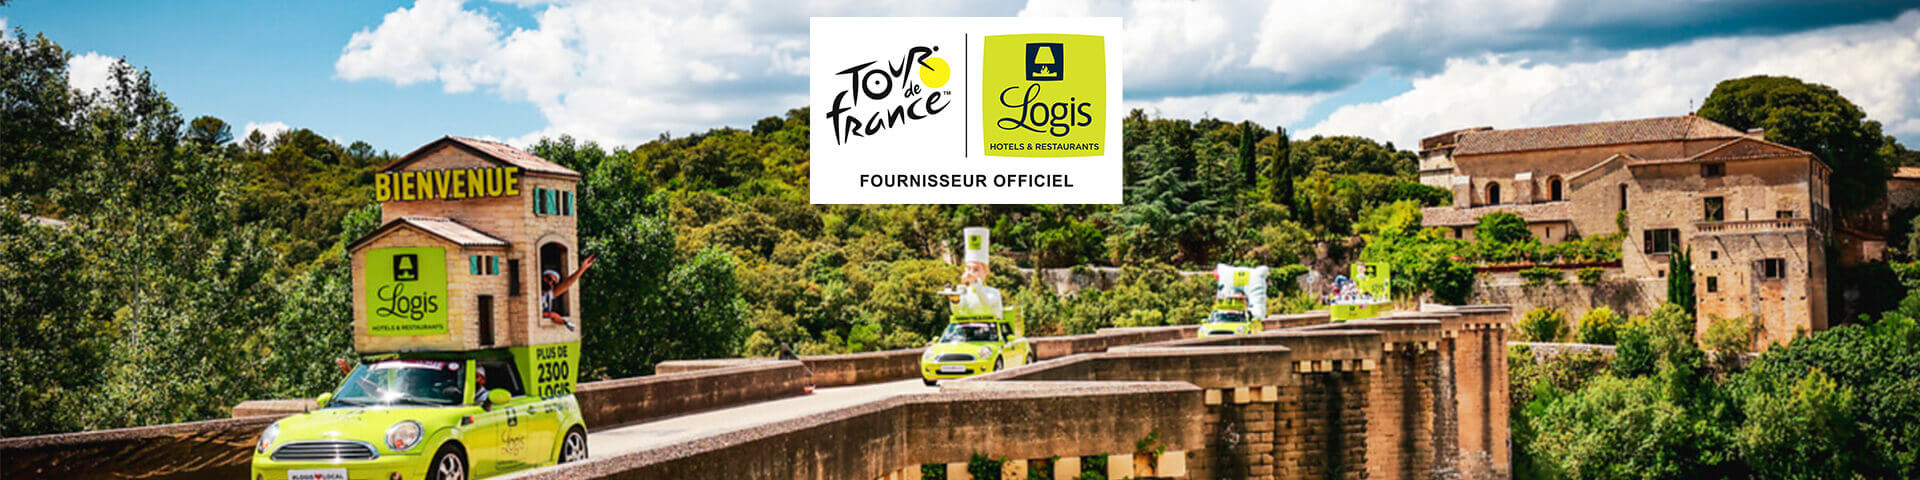 Logis Hotels hebergeur officiel Tour de France 2020